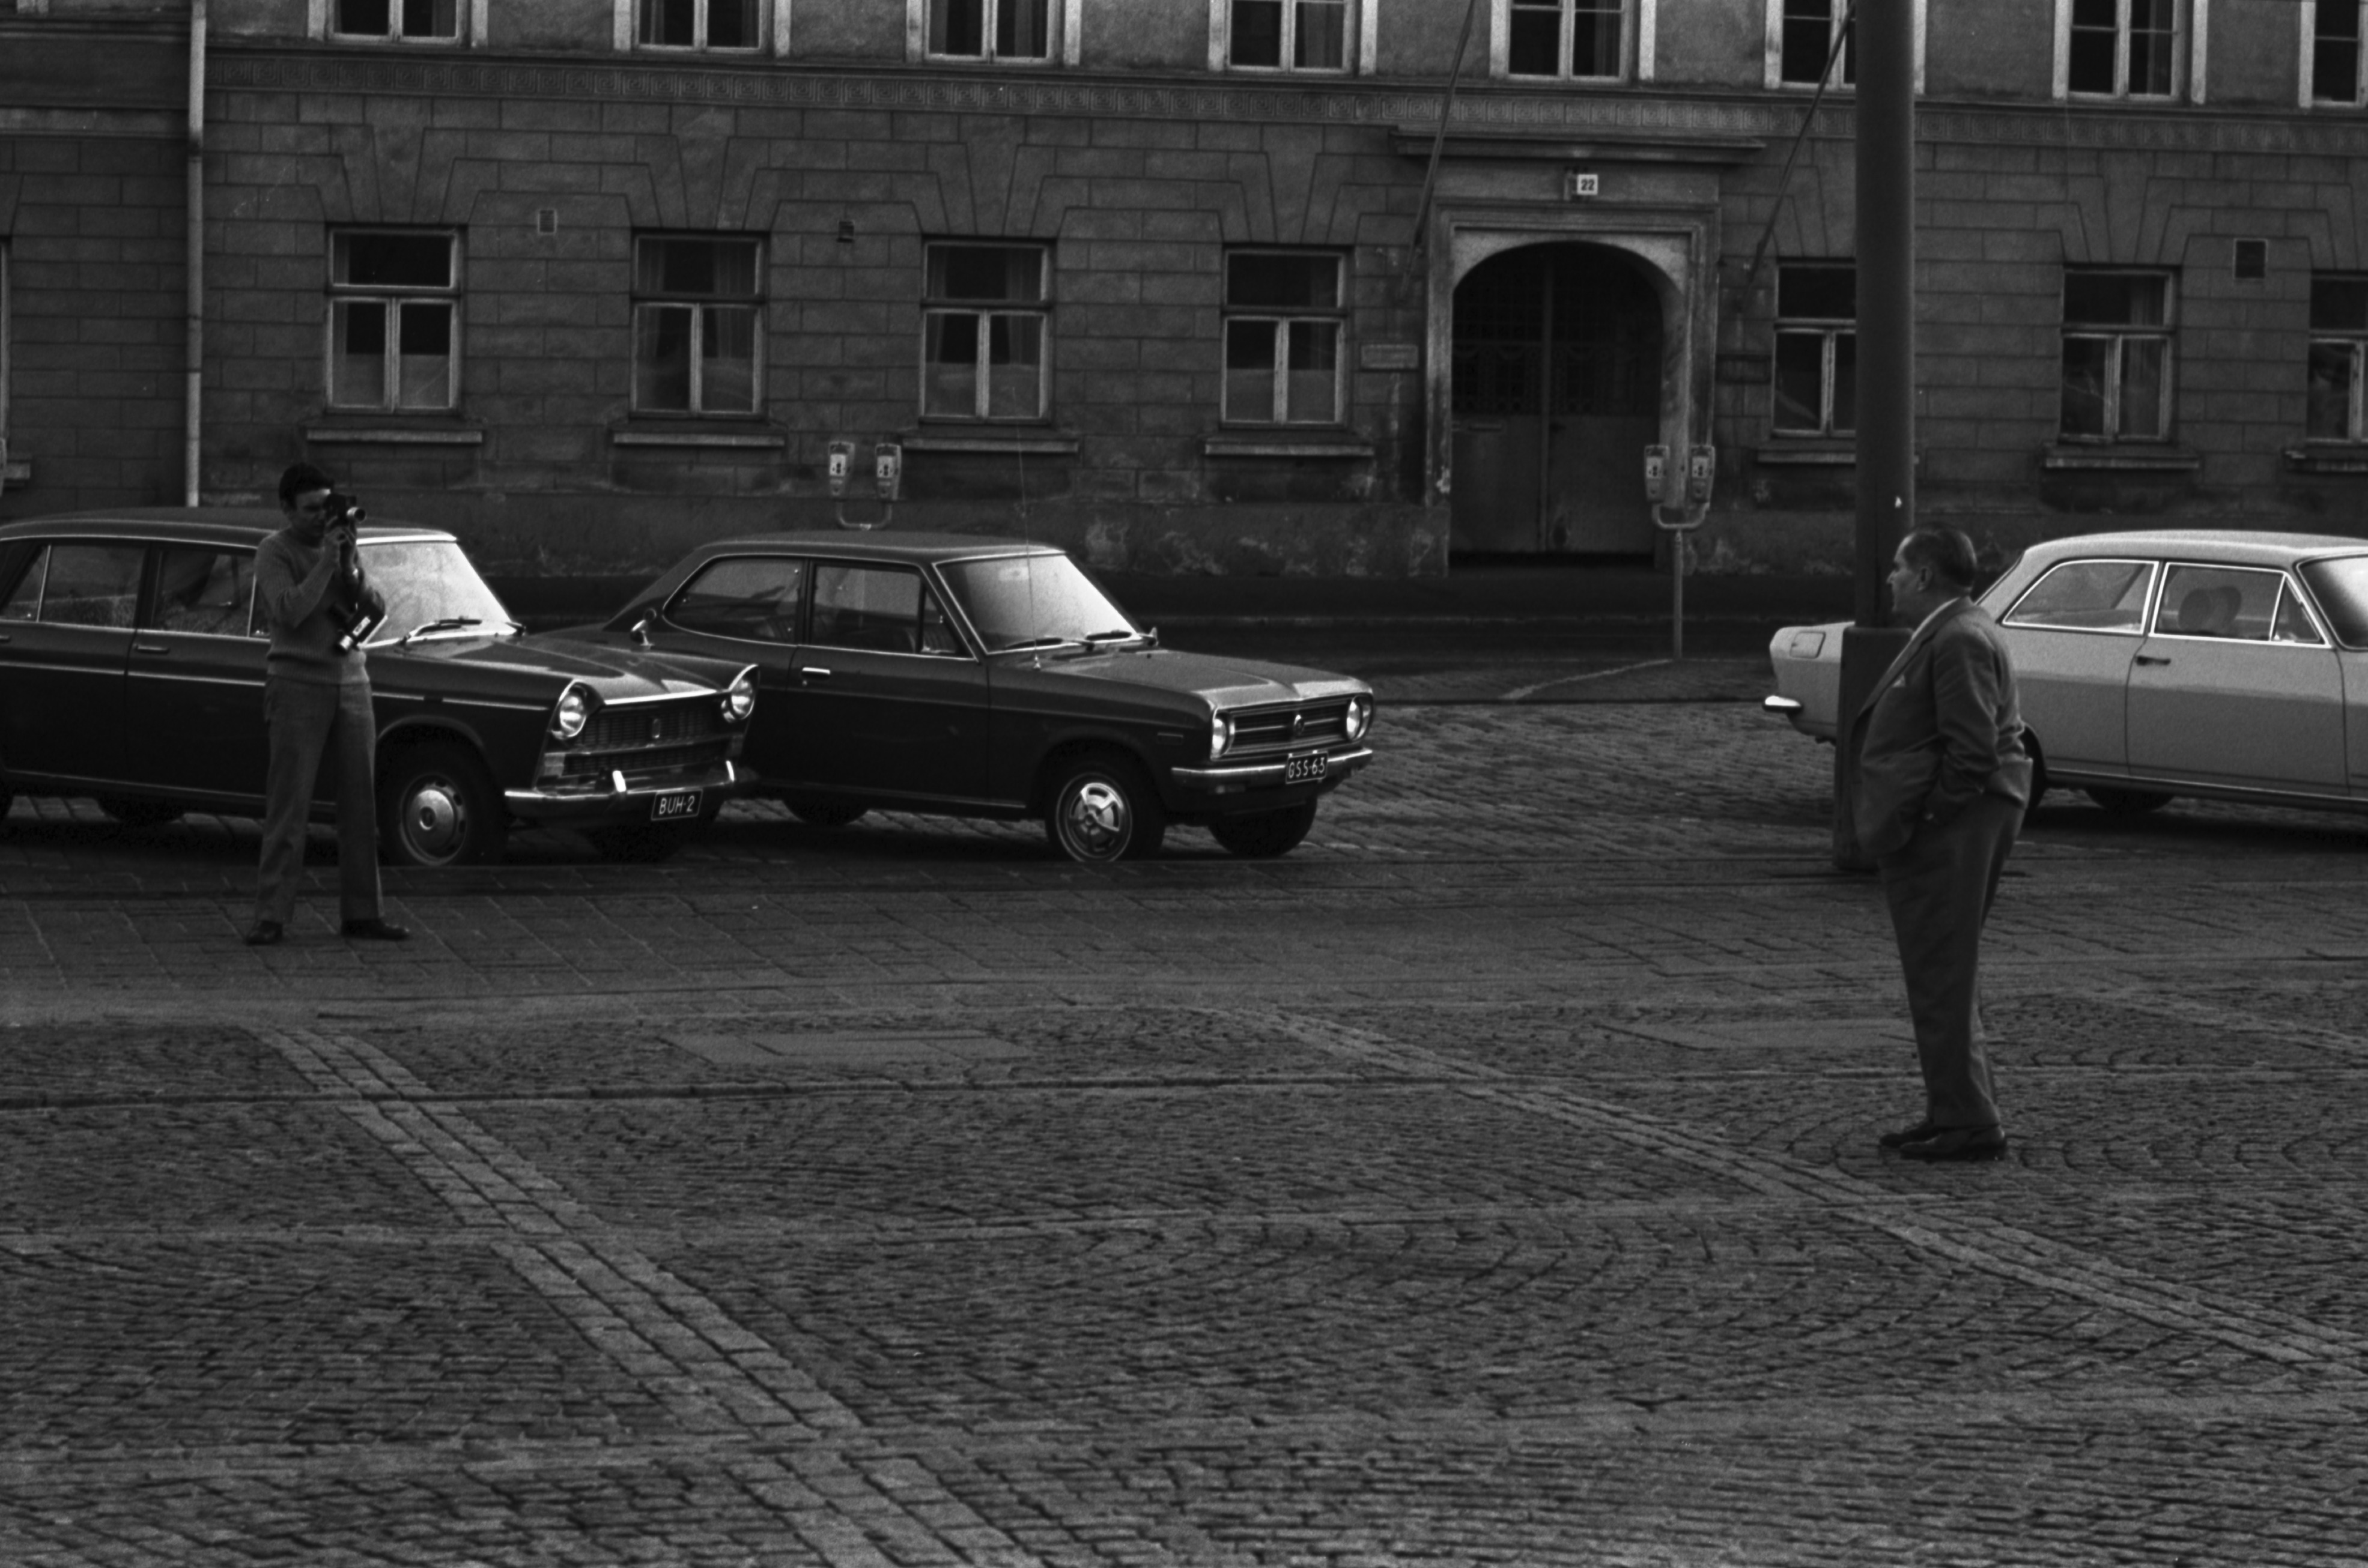 Kruununhaka, Senaatintori. Mies kaitafilmaamassa toista miestä Senaatintorilla Aleksanterinkatu 22:n kohdalla. Taustalla pysäköityjä autoja: Fiat 1800, Datsun 1200 "Finn" ja Opel Rekord.